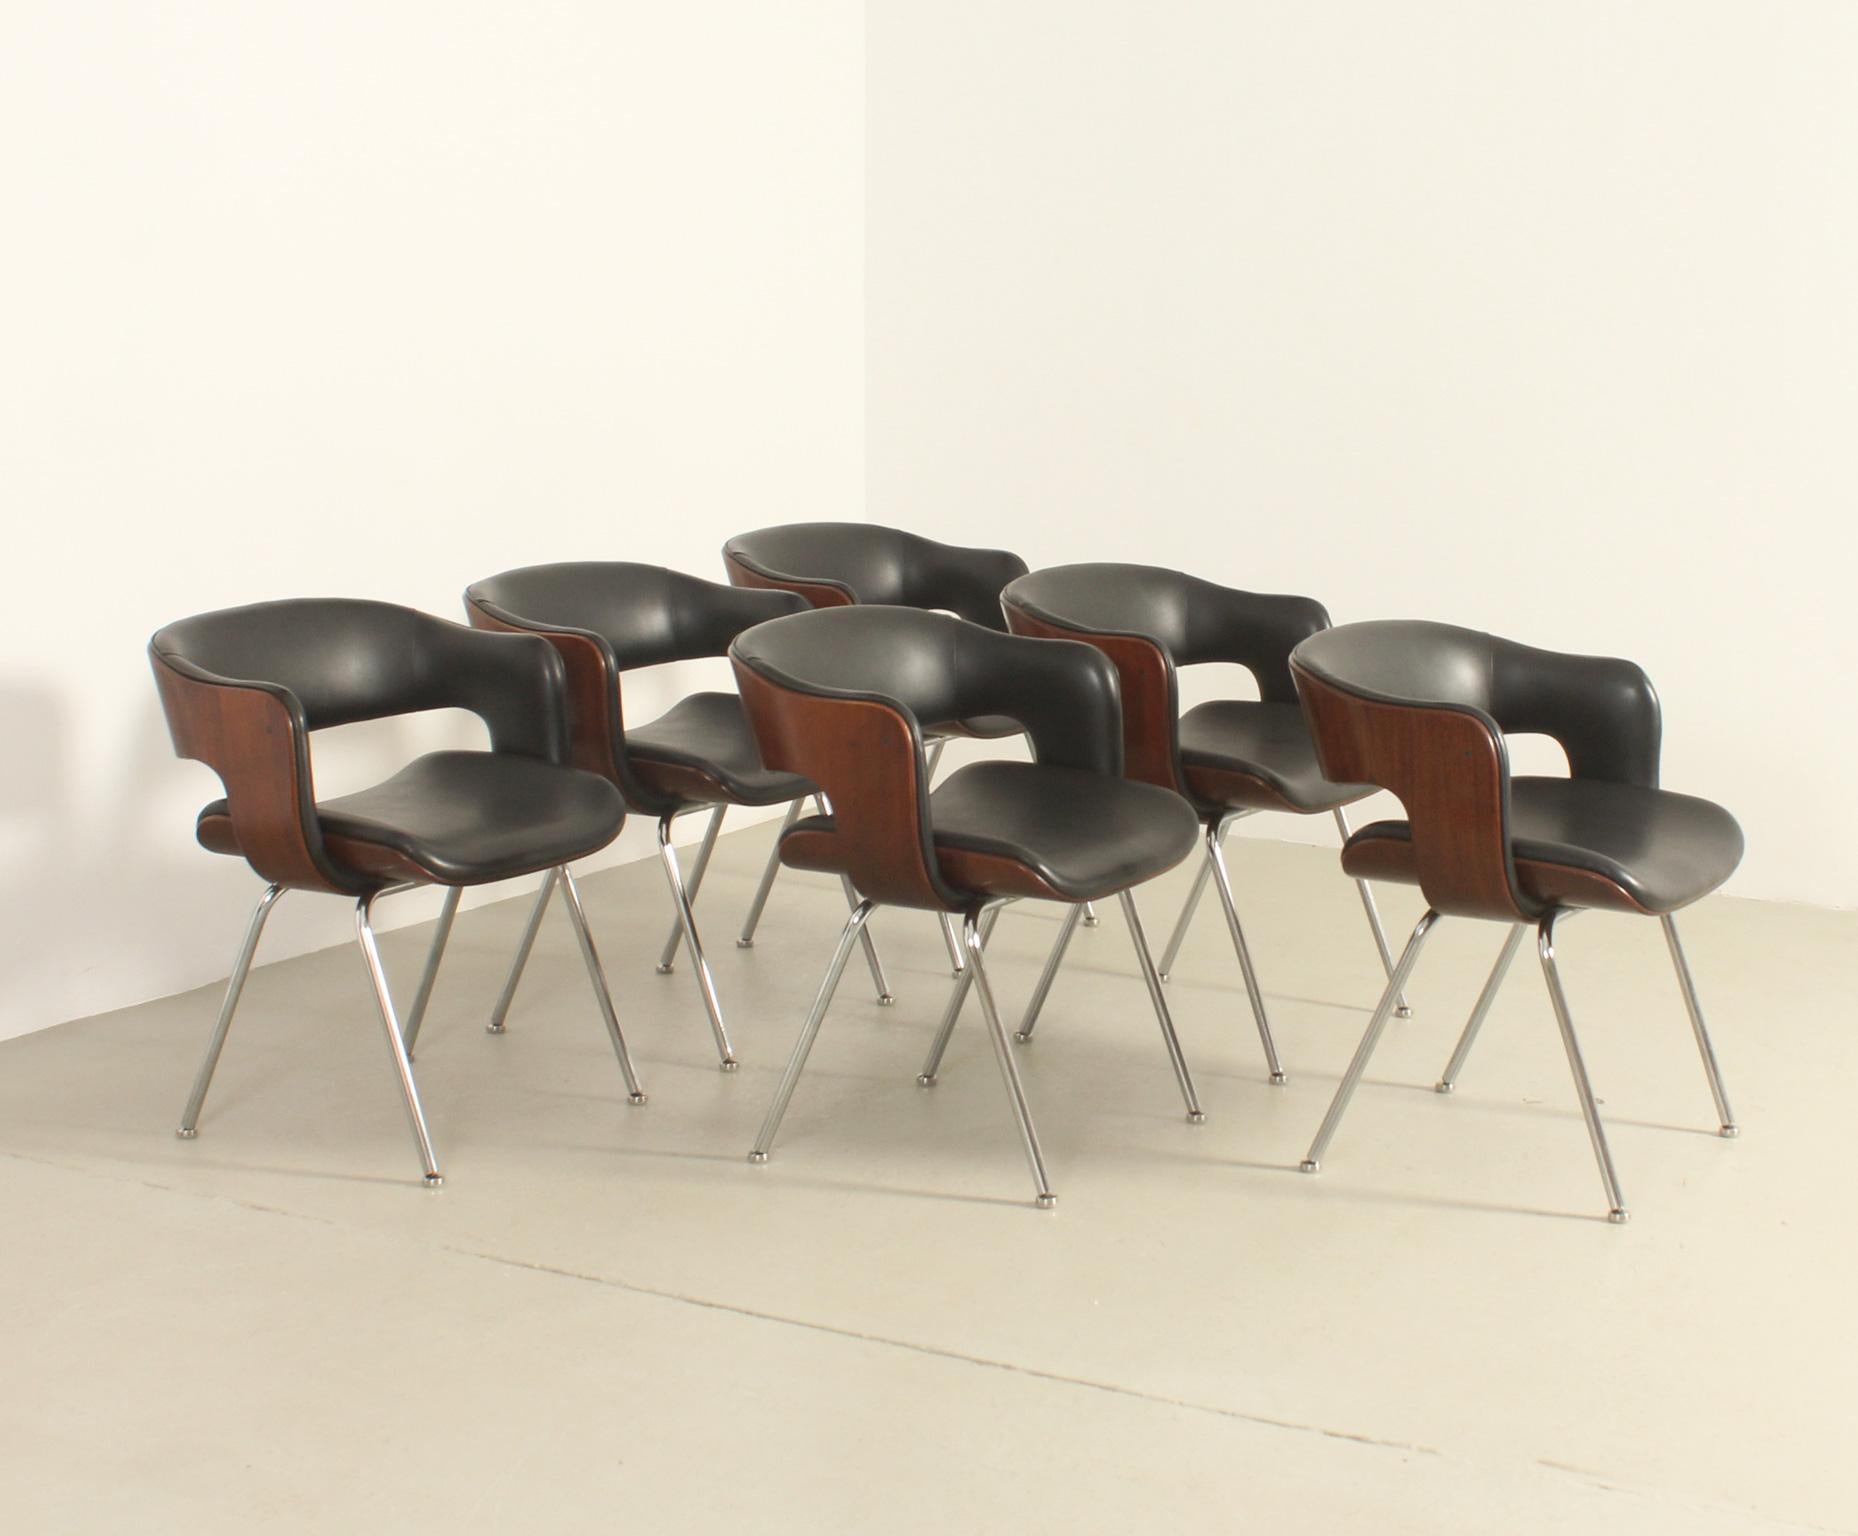 Satz von sechs Oxford-Stühlen, entworfen 1963 vom britischen Designer Martin Grierson für Arflex, Italien. Geformte Sperrholzschale mit schwarzem Original-Vinylbezug und polierten Stahlfüßen.